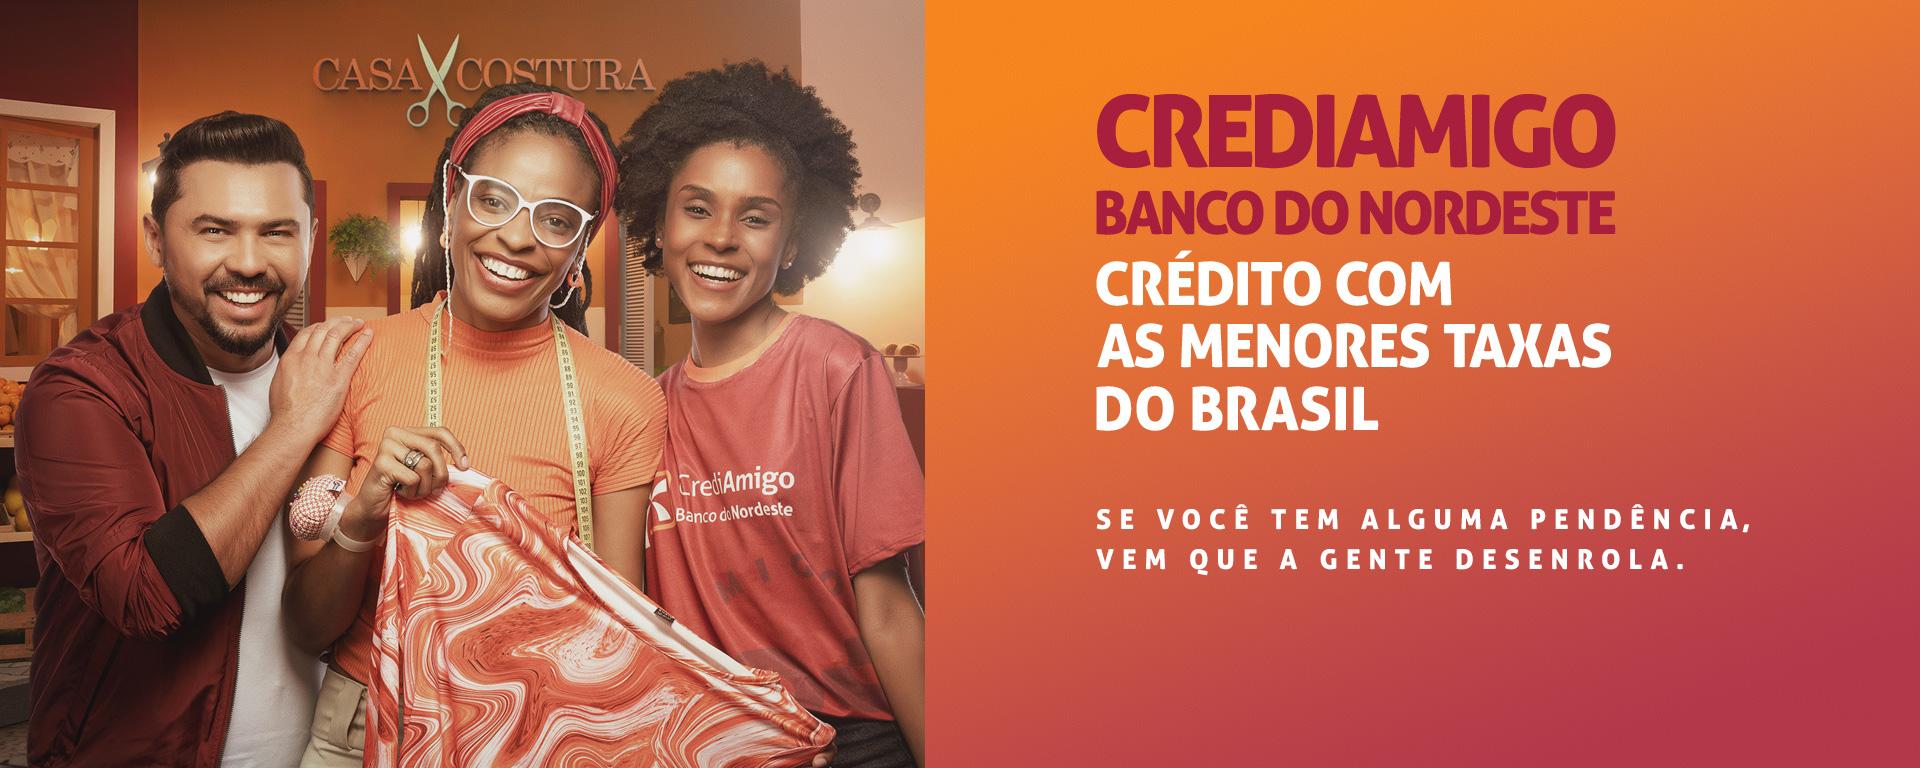 Crediamigo Banco do Nordeste, crédito com as menores do Brasil. Se você tem alguma pendência, vem que a gente desenrola.